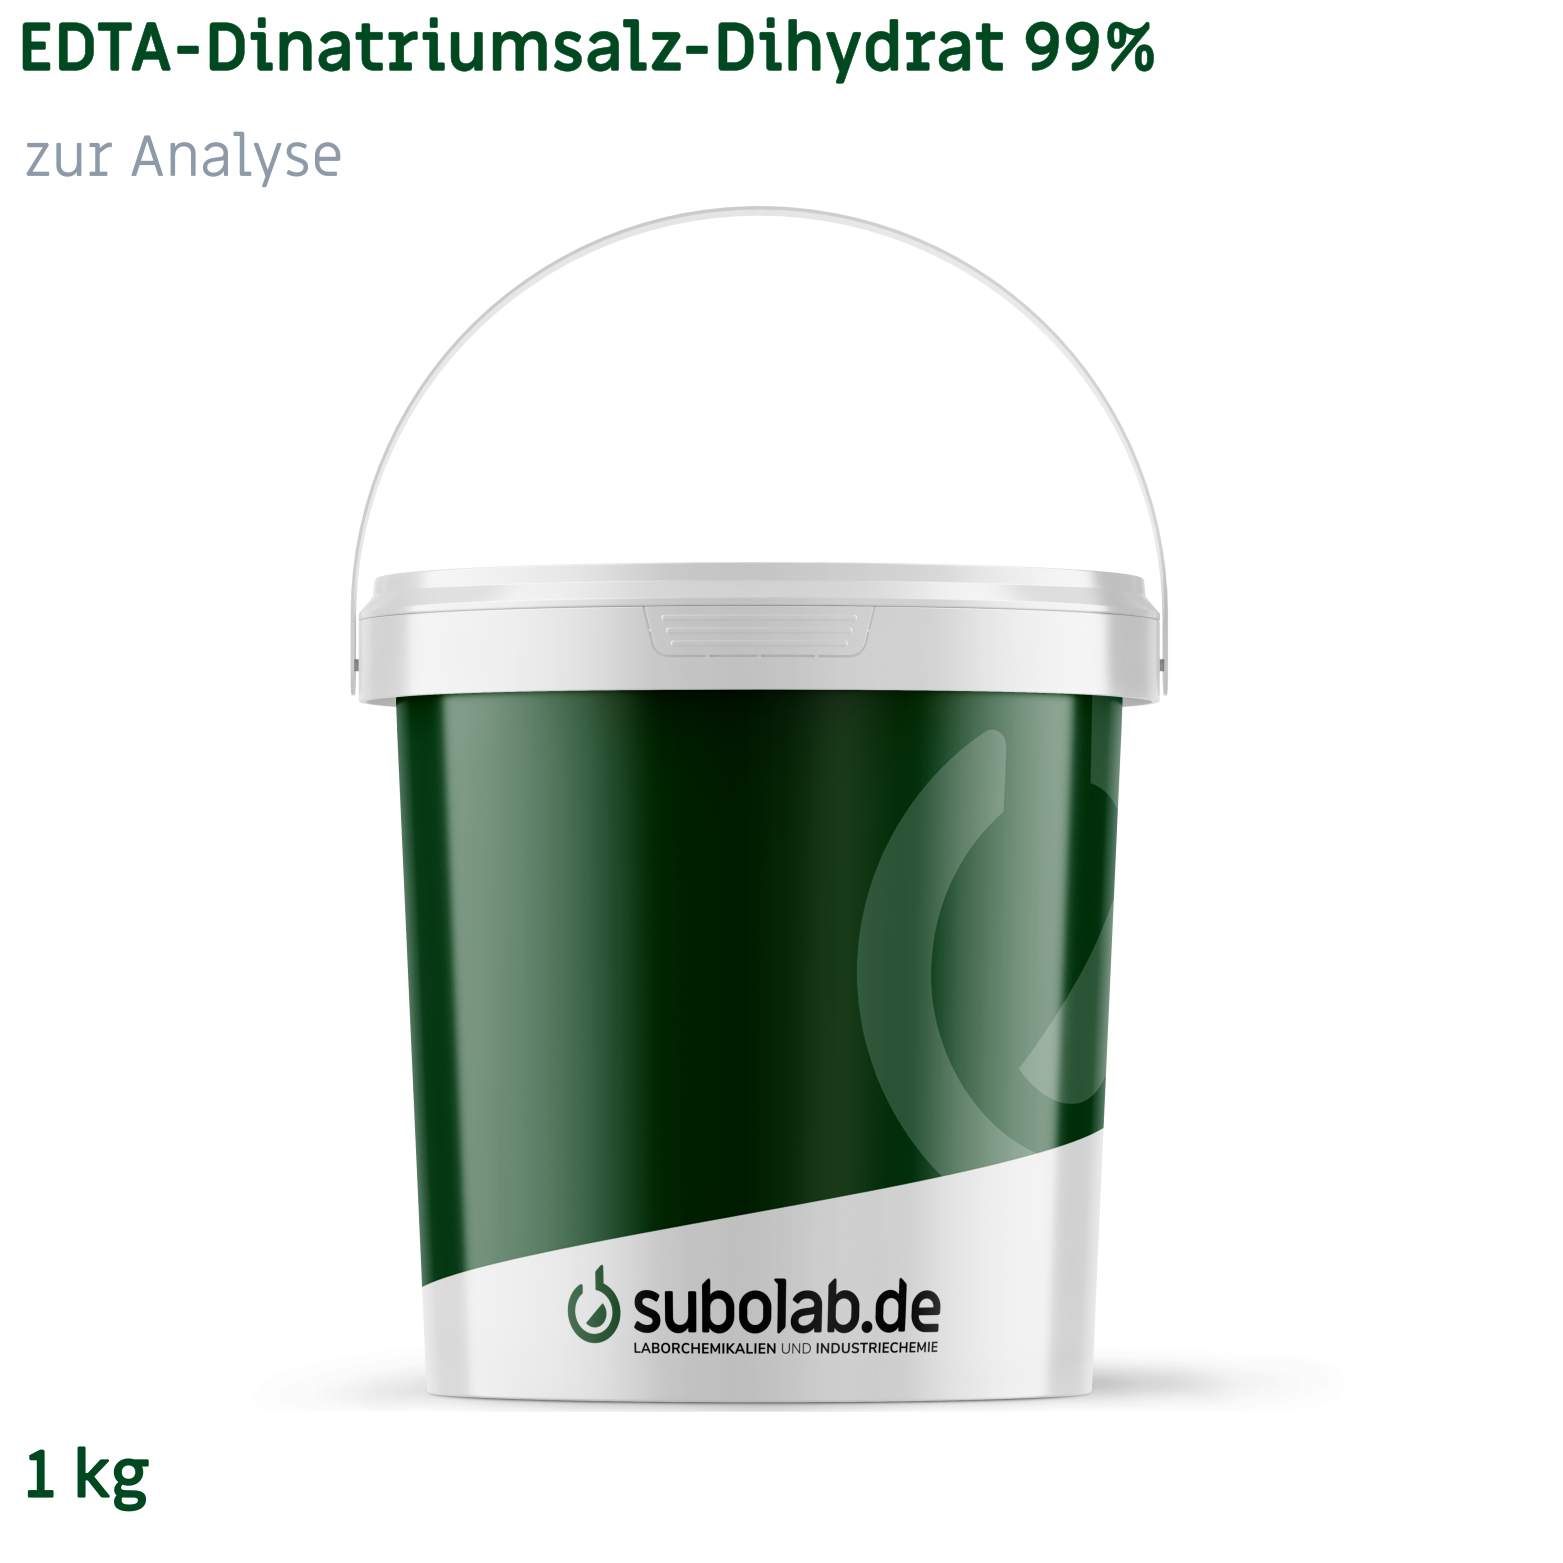 Bild von EDTA - Dinatriumsalz - Dihydrat 99% zur Analyse (1 kg)